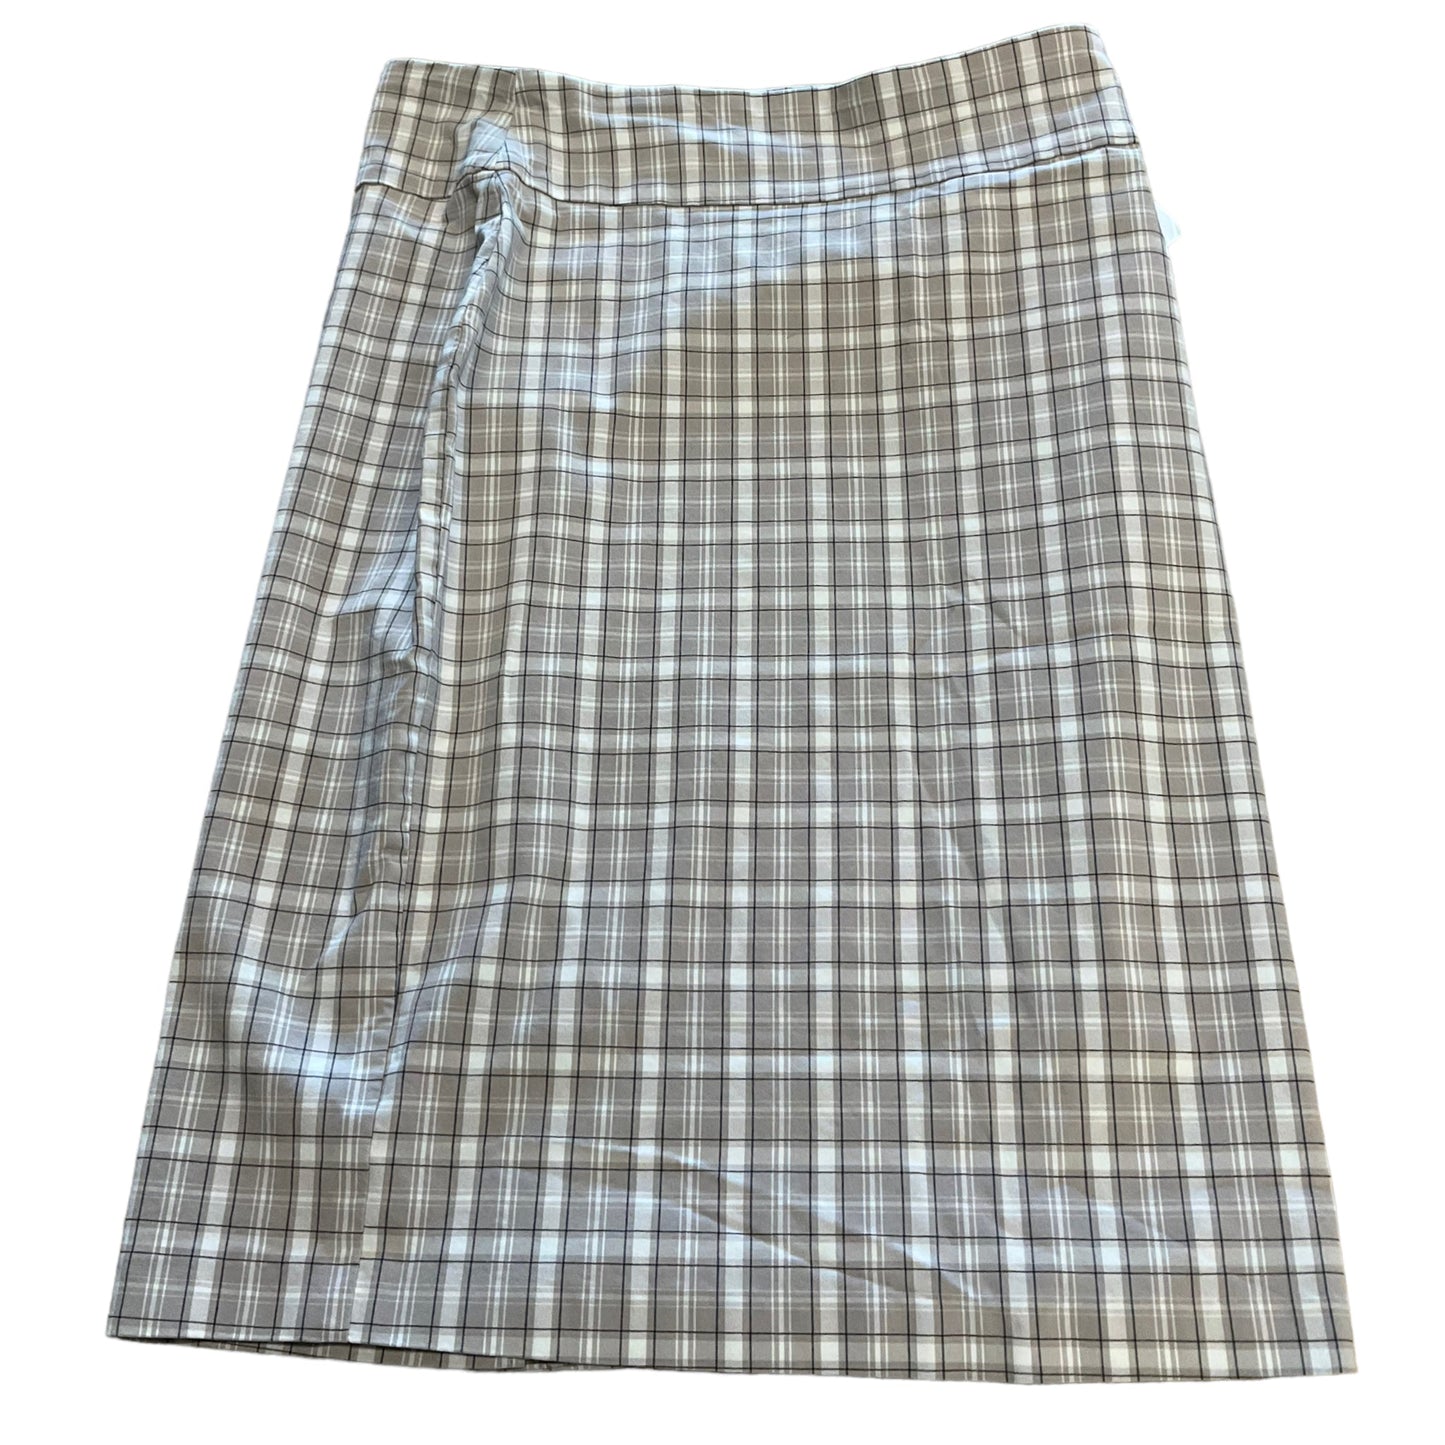 Skirt Mini & Short By Soho Design Group  Size: S